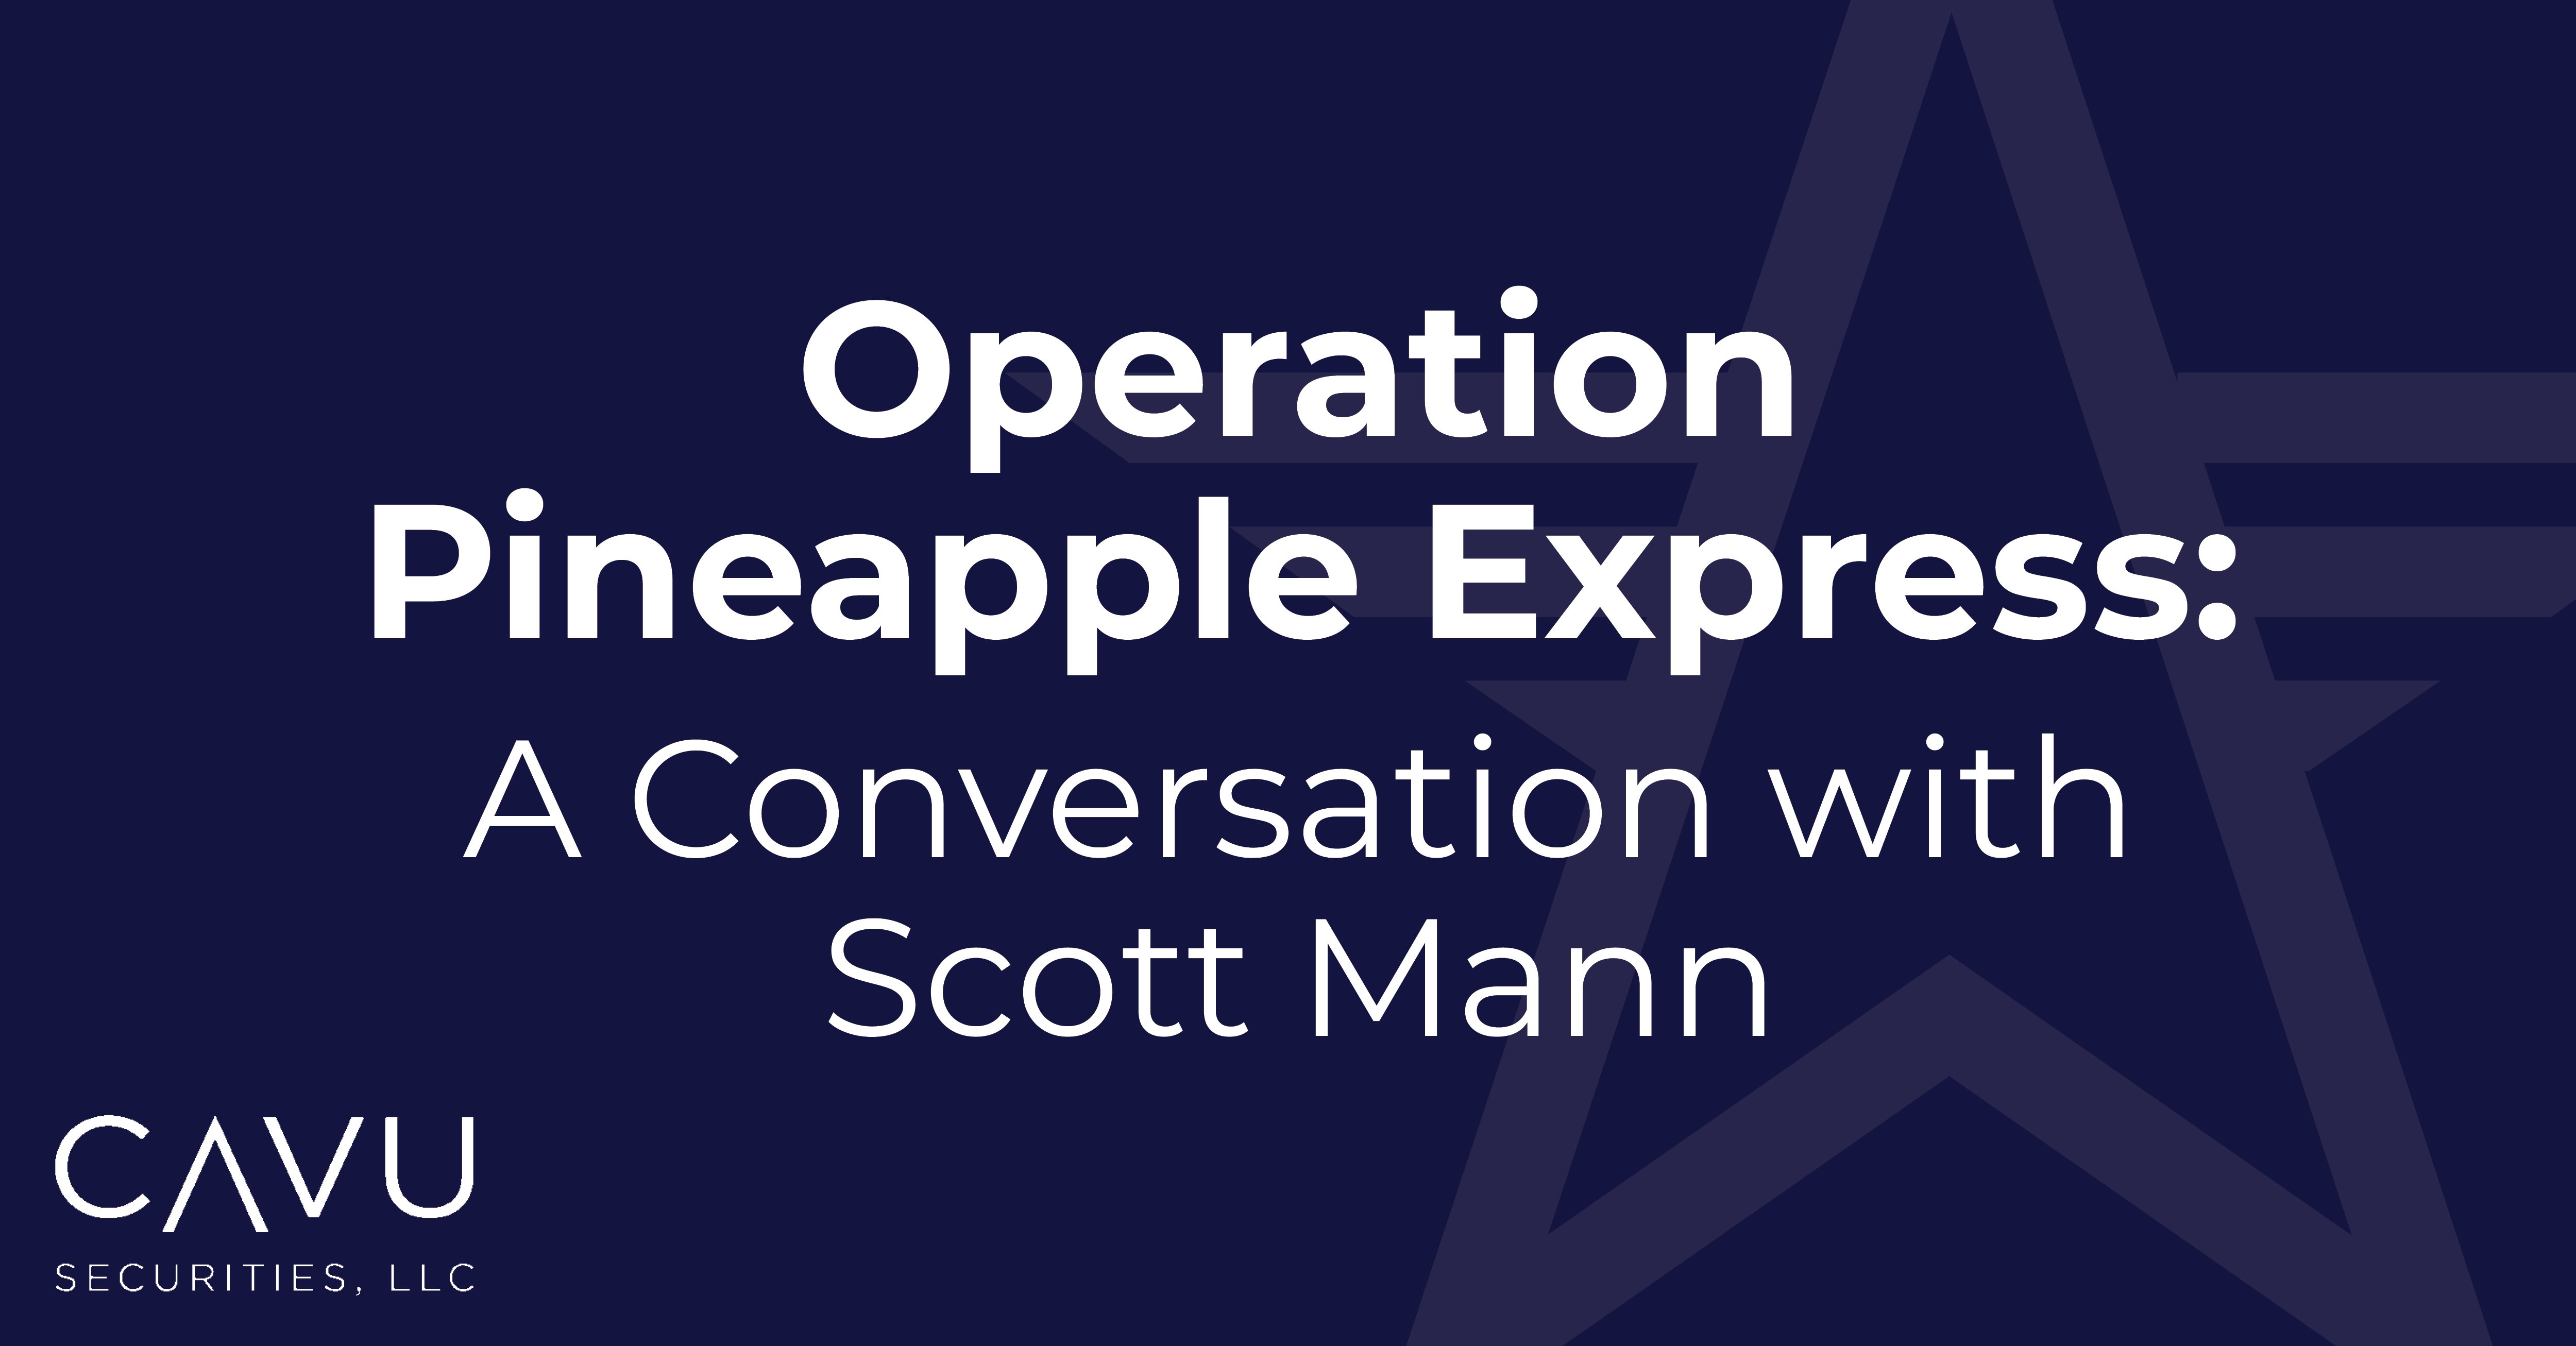 Operation Pineapple Express: A Conversation with Scott Mann